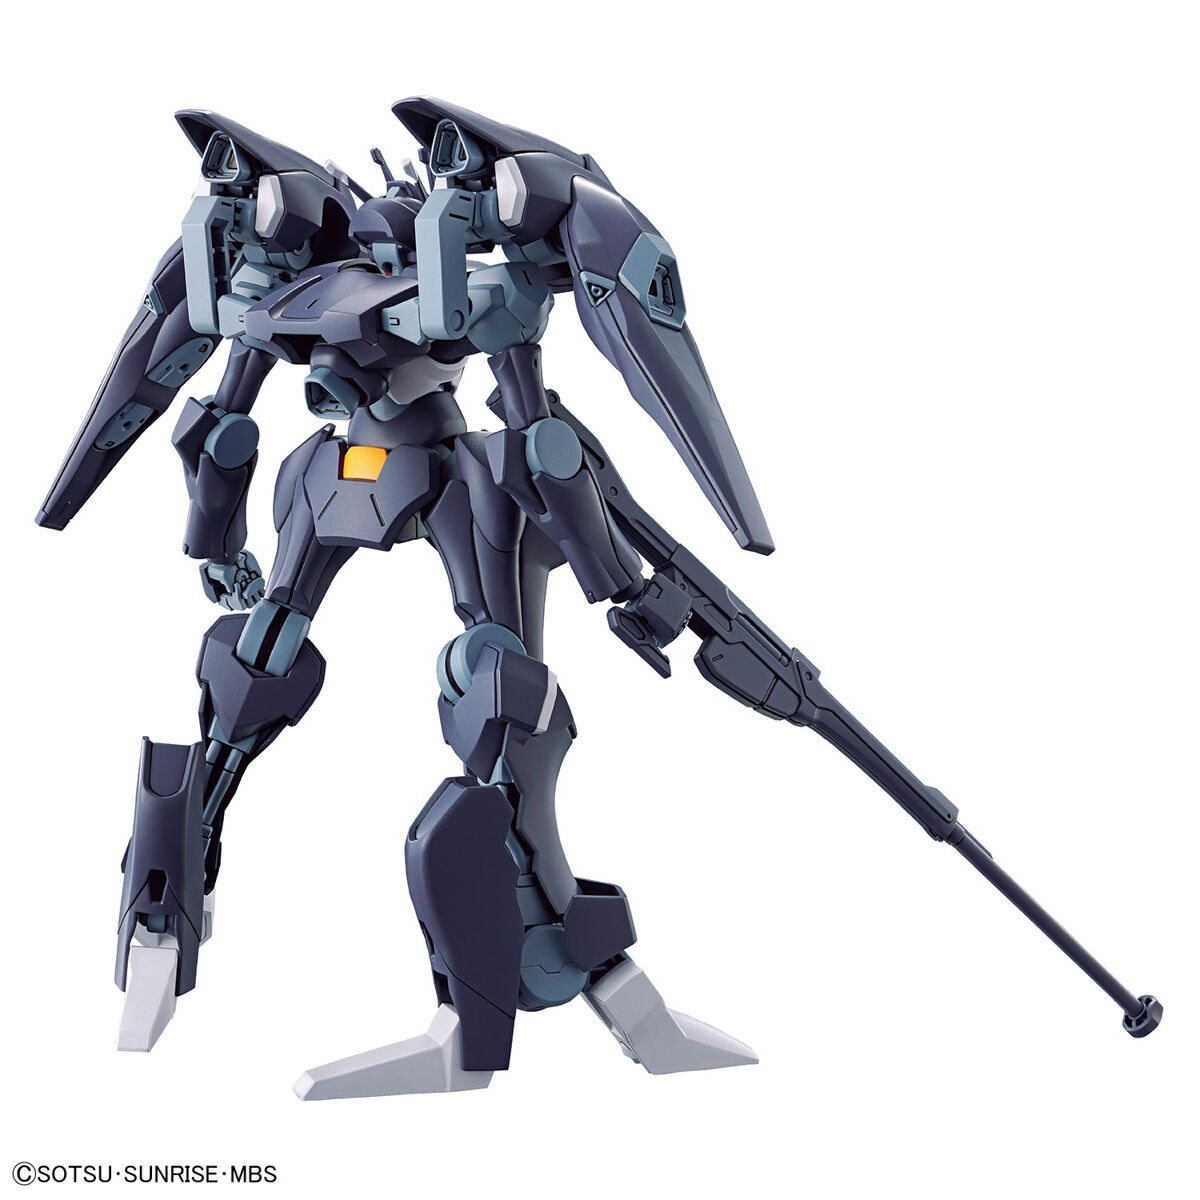 Gunpla 1/144 HG Gundam Pharact-Bandai-Ace Cards &amp; Collectibles